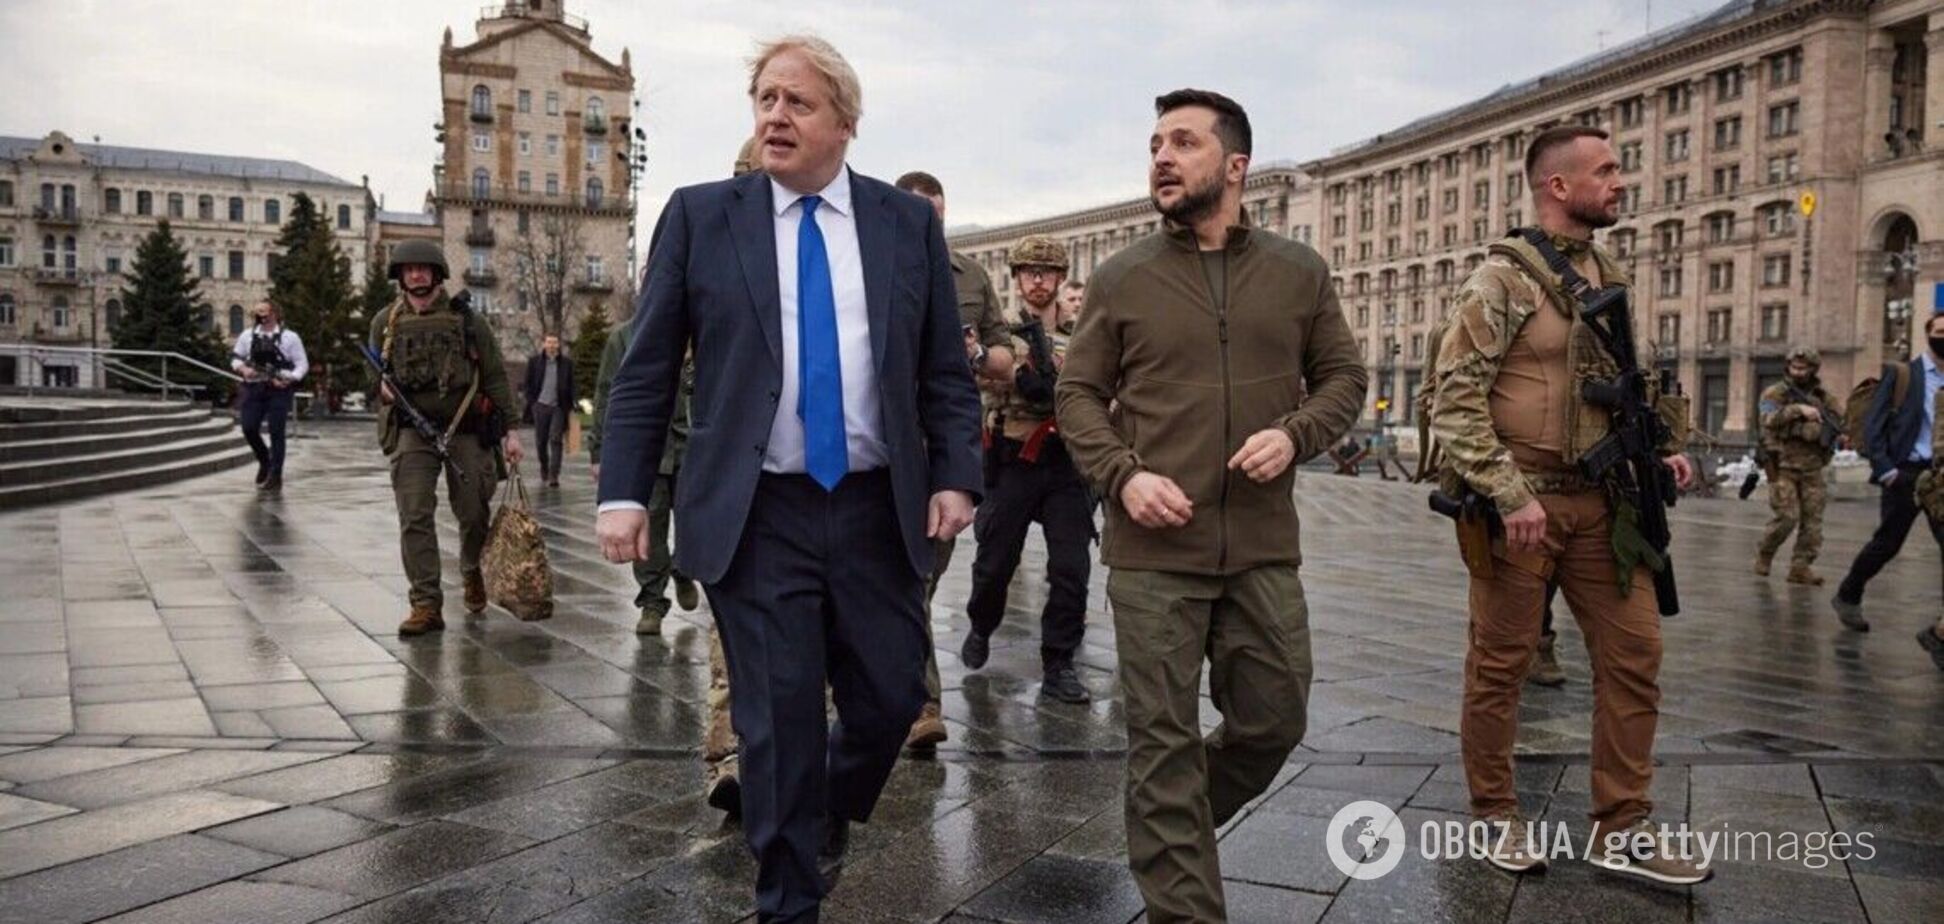 'Рішення в наших руках': Борис Джонсон закликав Захід терміново надати Україні допомогу
